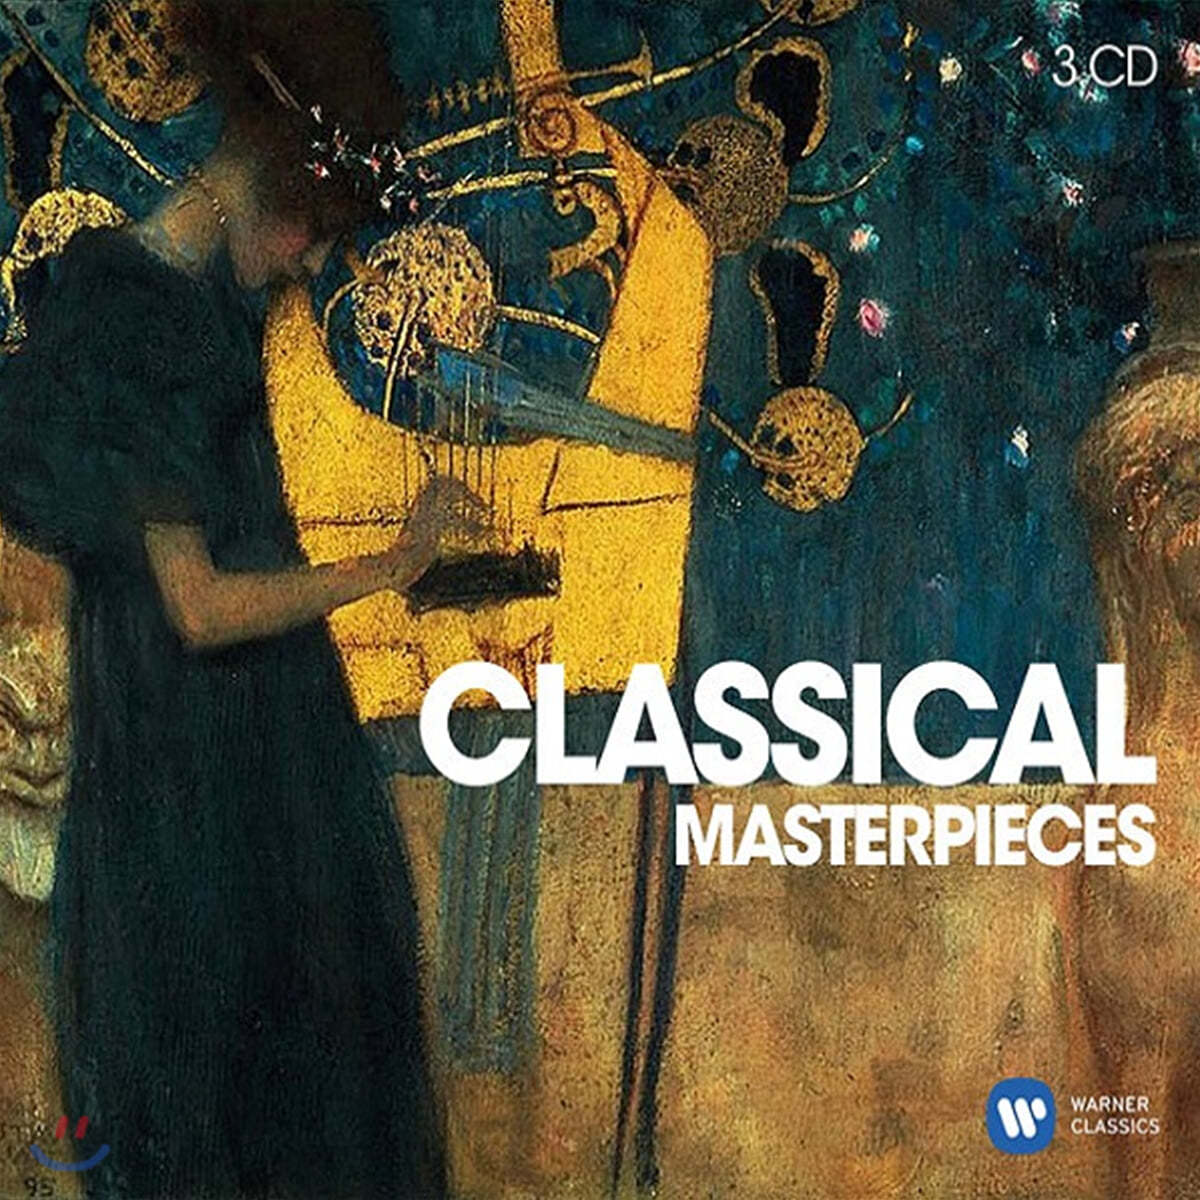 최신 녹음의 클래식 명연주 모음집 (Classical Masterpieces)